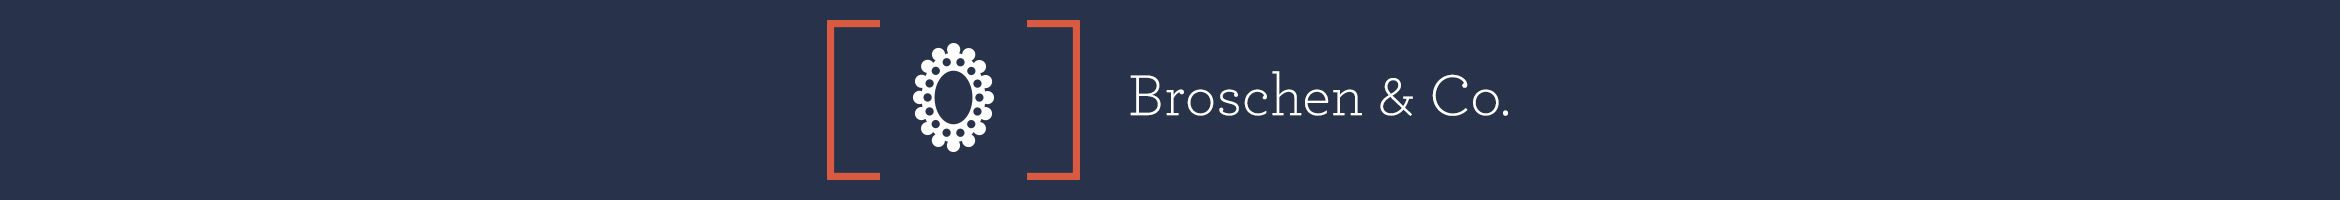 Broschen & Co.